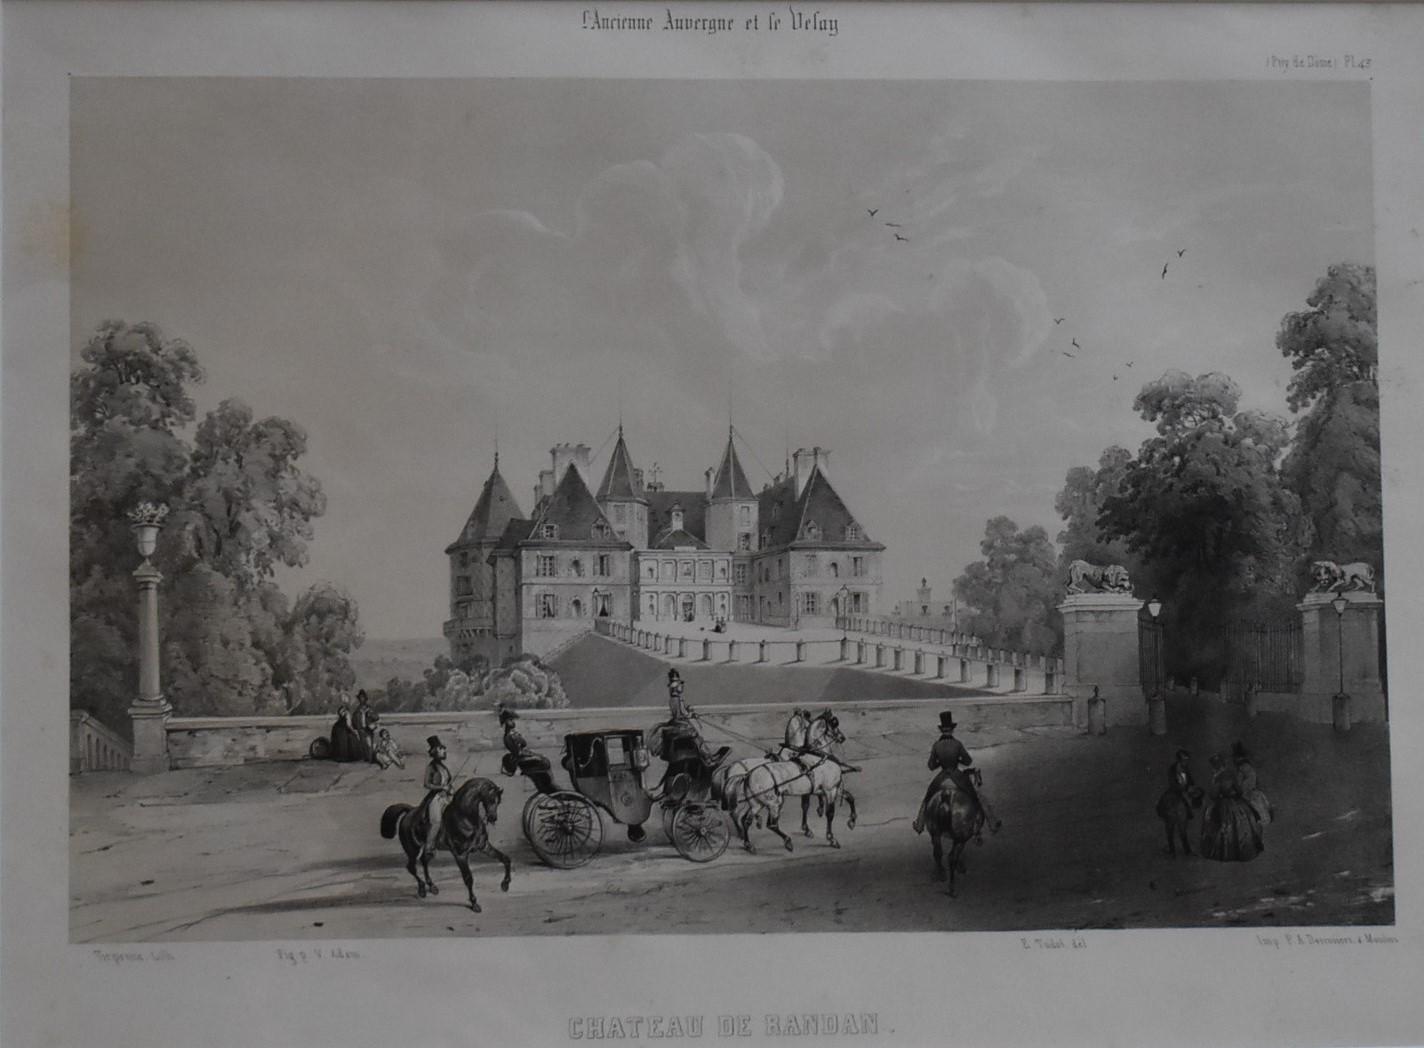 LIthographie de Jean-Louis Tirpenne - " Château de Randan "